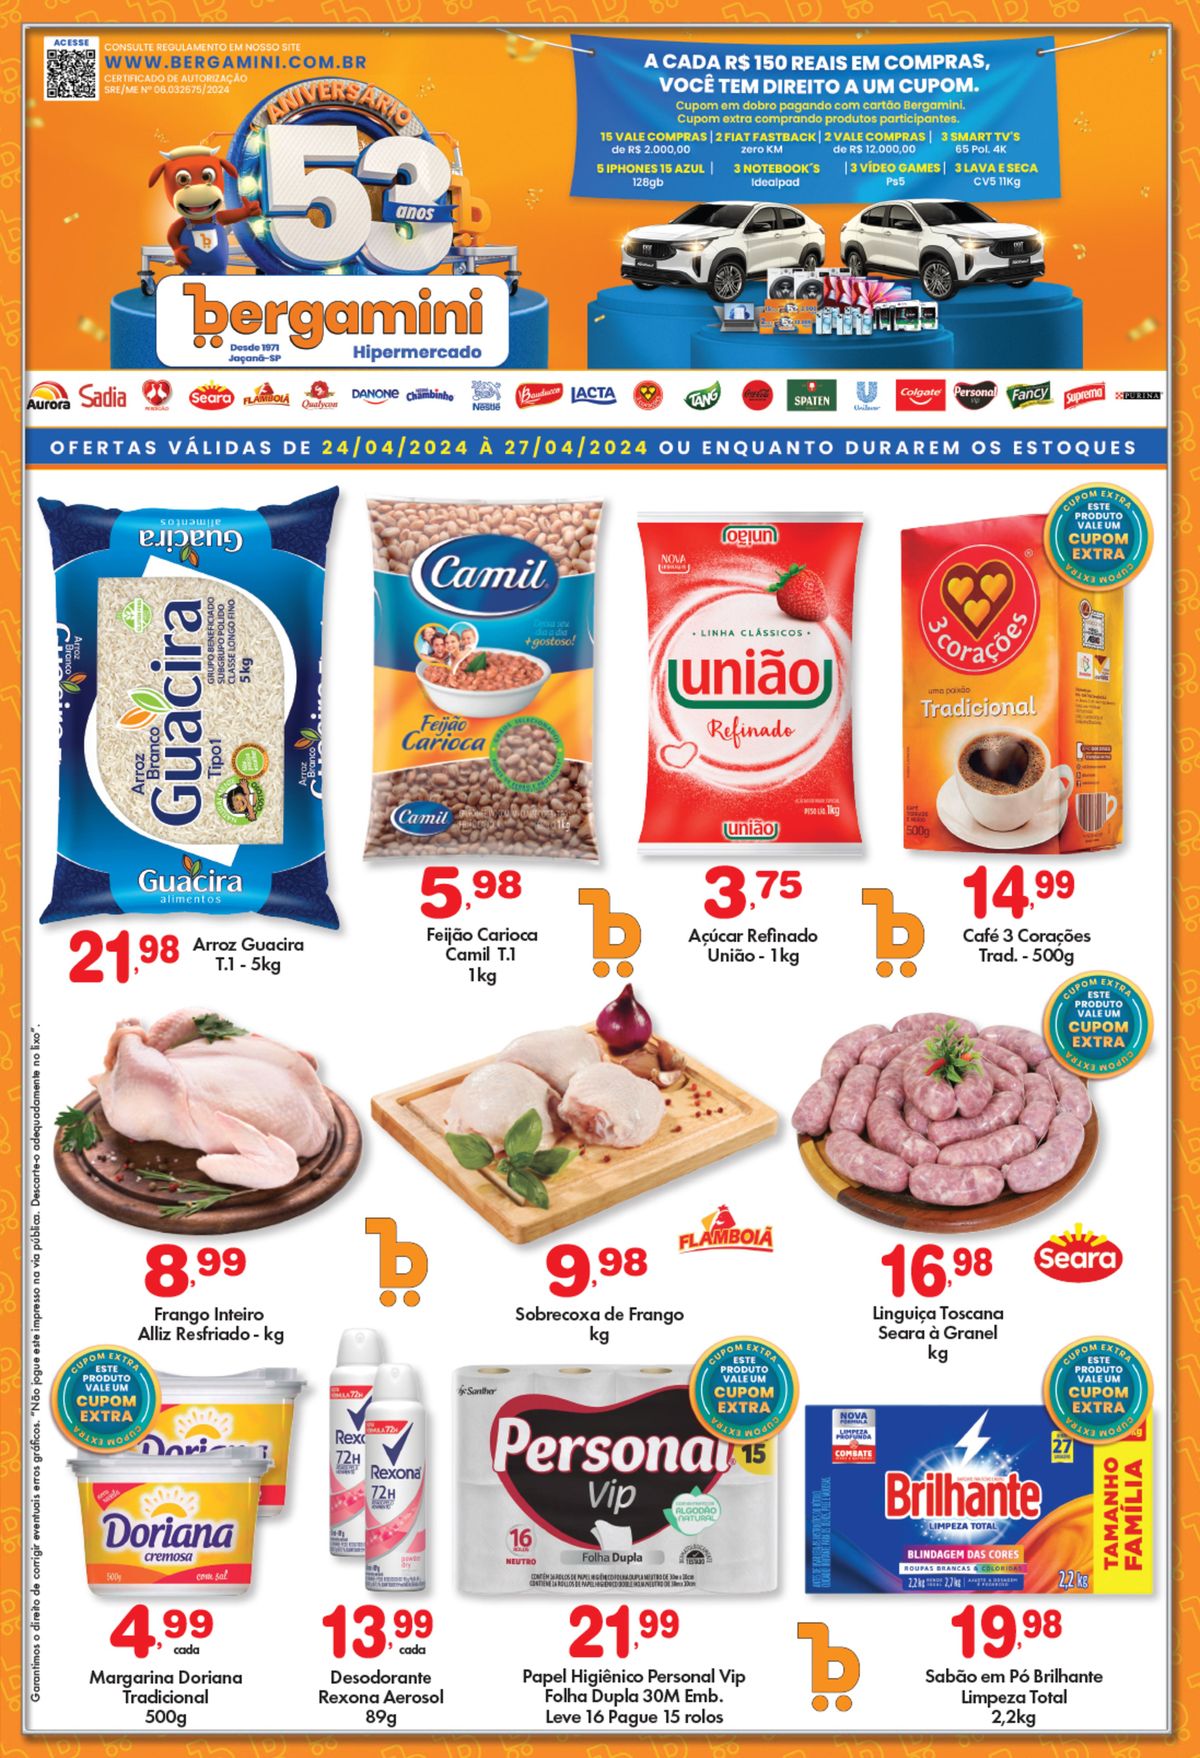 Ofertas em Supermercado Bergamini incluindo Linha Clássicos e Produtos de Higiene, Ofertas Supermer